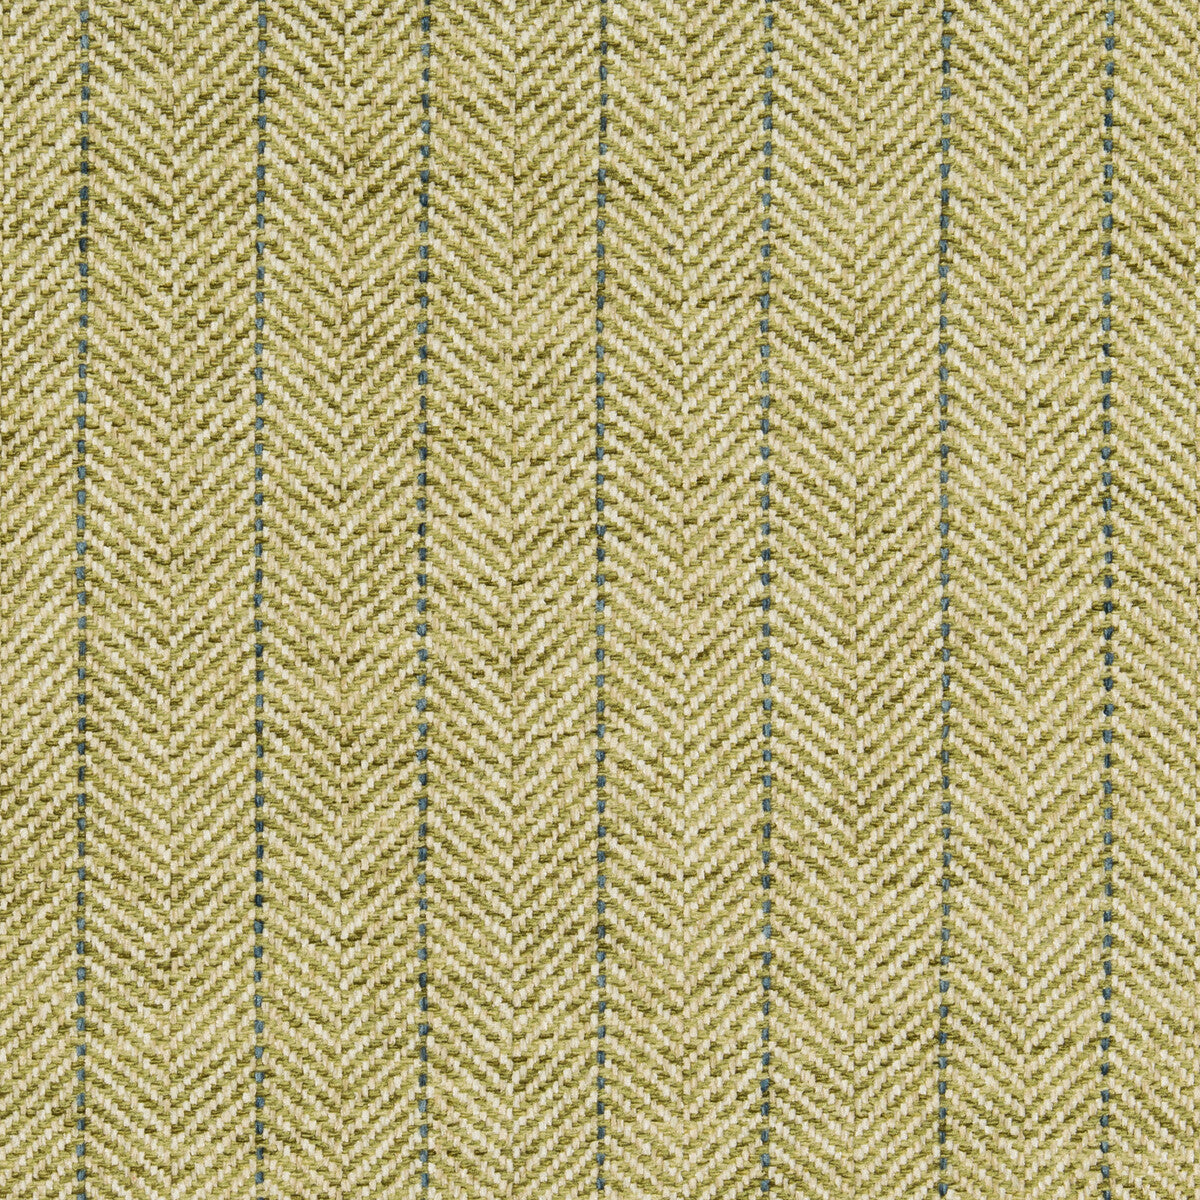 Kravet Basics fabric in 35776-3 color - pattern 35776.3.0 - by Kravet Basics